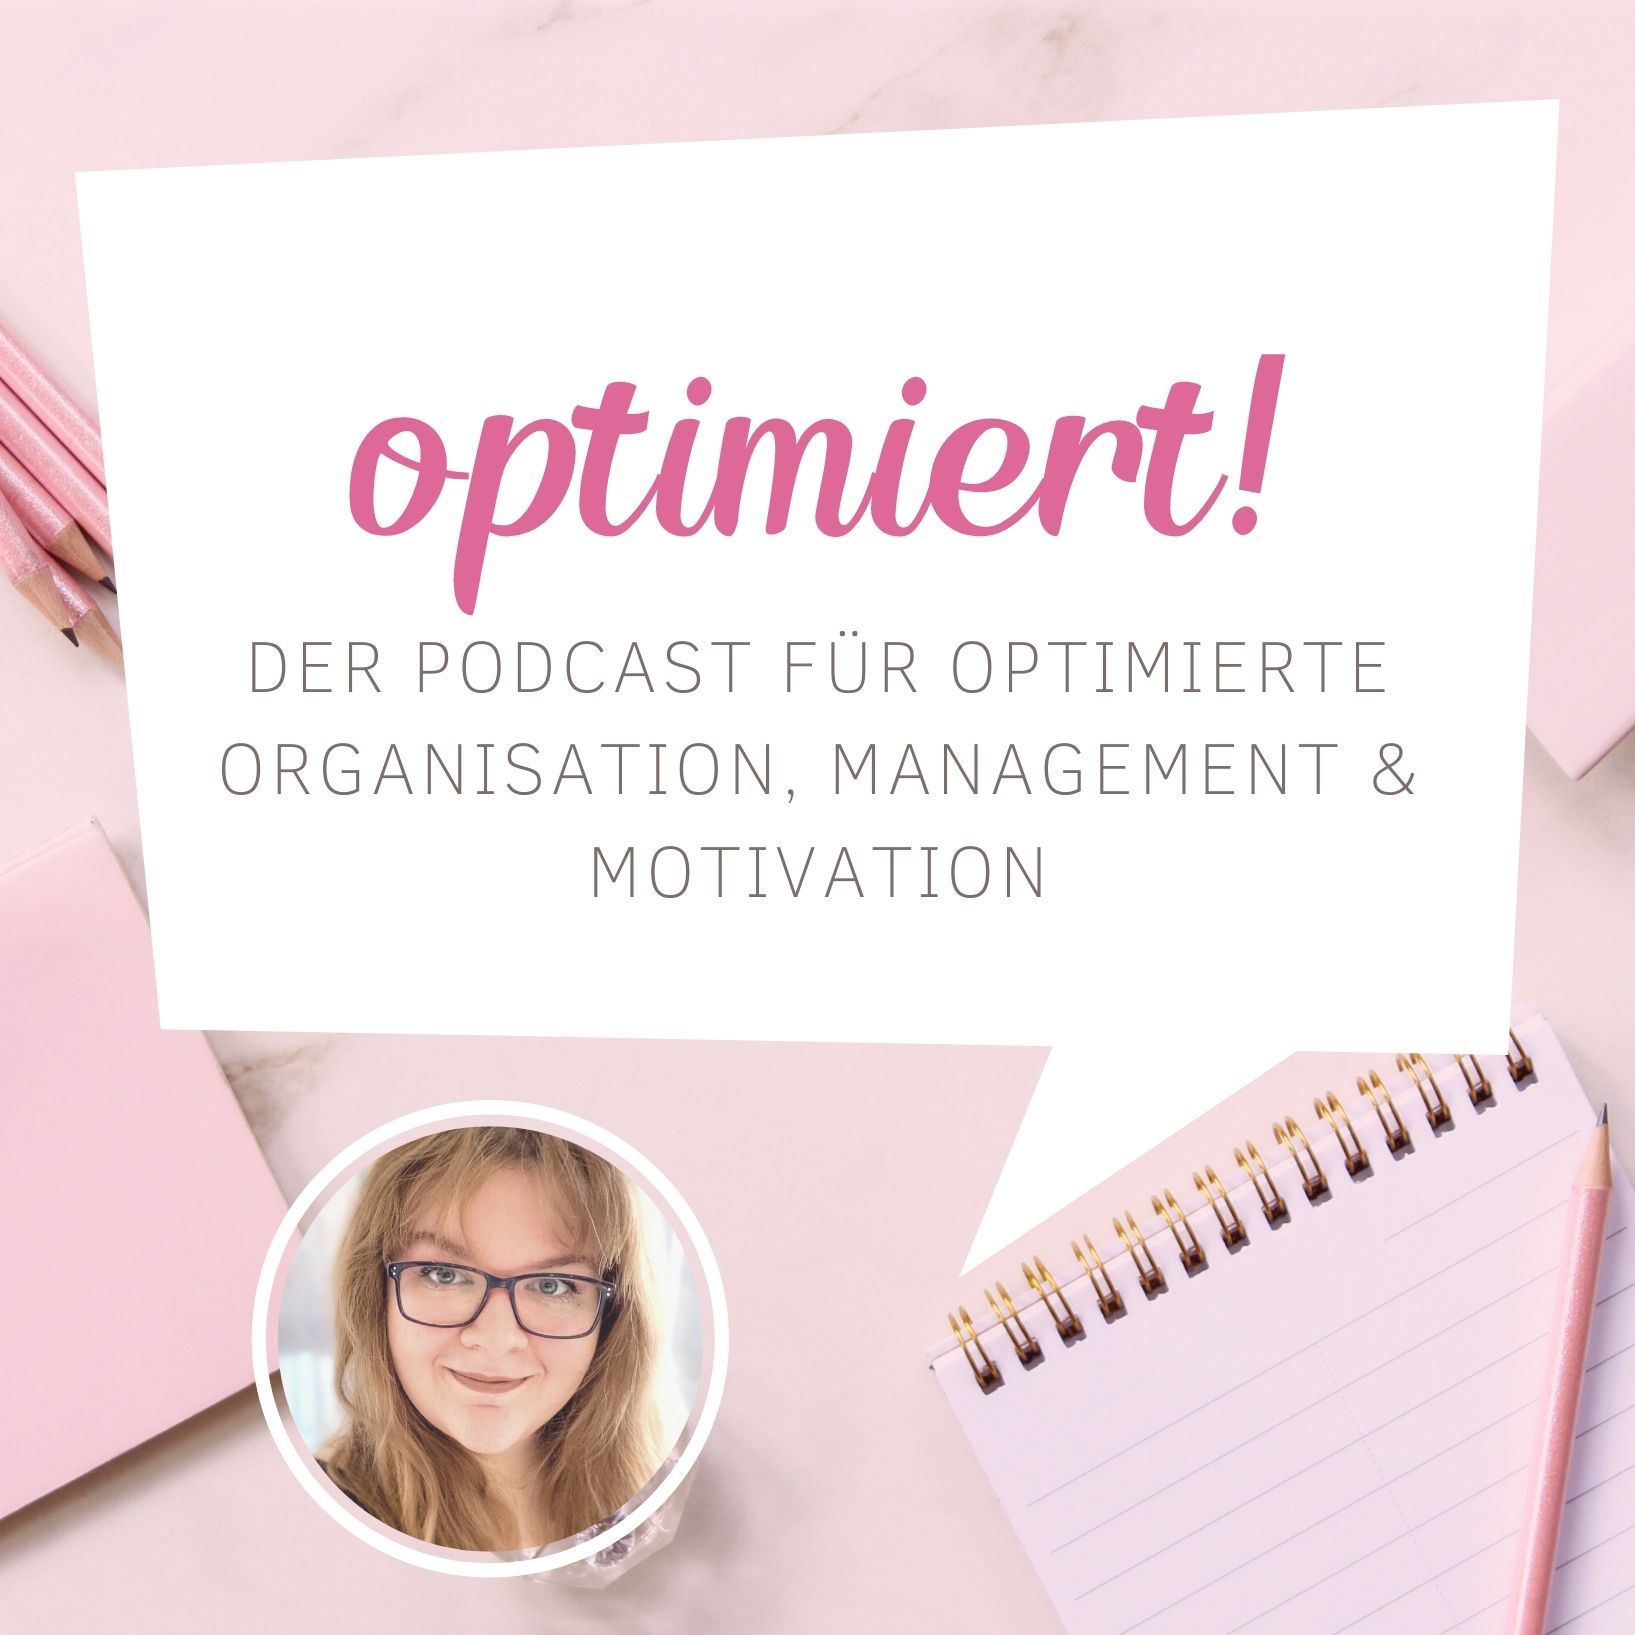 Banner vom Podcast optimiert, rosa mit einer Sprechblase "optimiert"